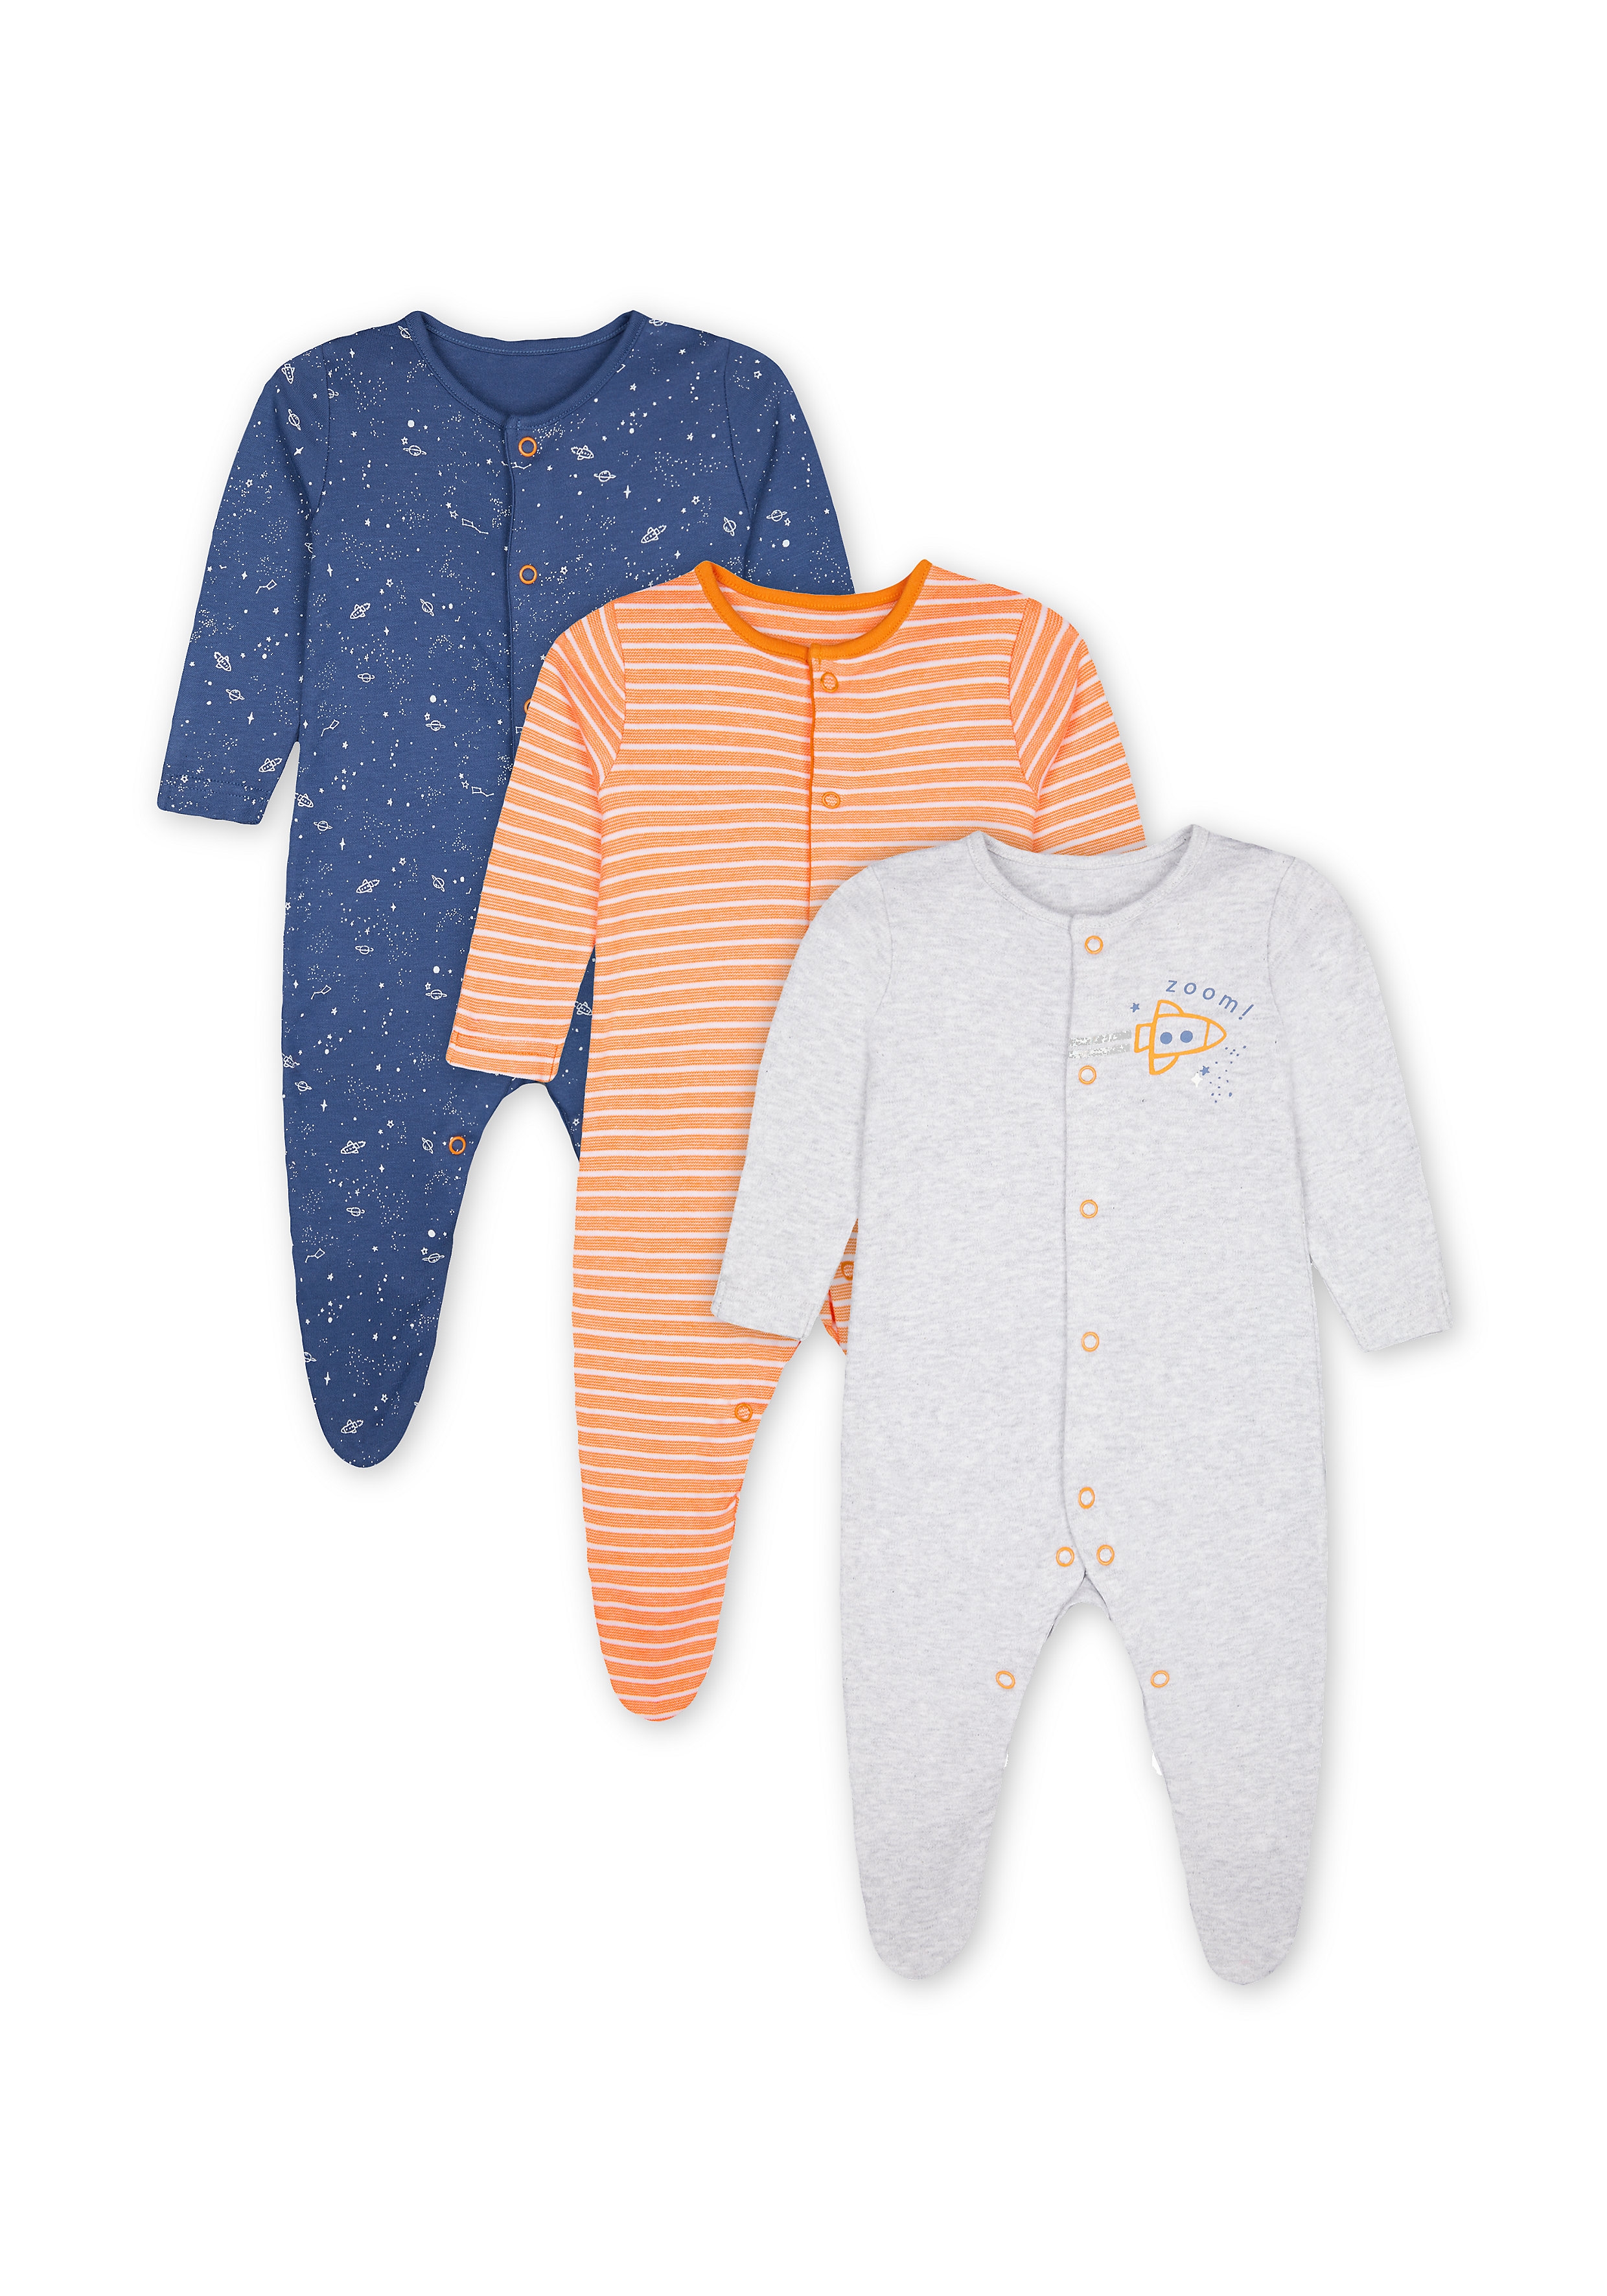 Mothercare | Boys Sleepsuit Space Print - Pack Of 3 - Orange Navy Grey 0